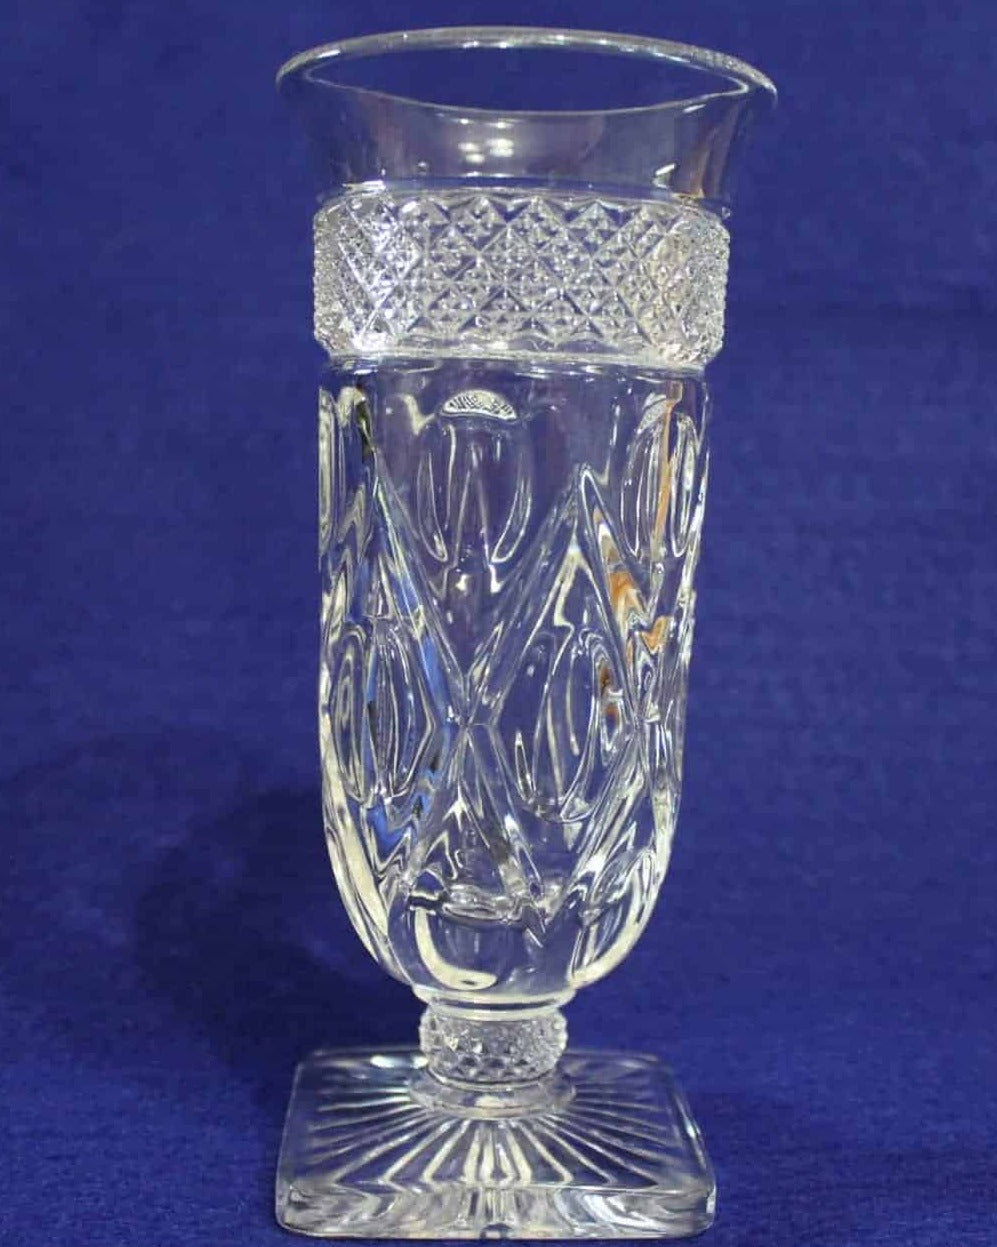 Cocktail / Parfait Glasses, Imperial Glass, Cape Cod, Set of 8, Vintage